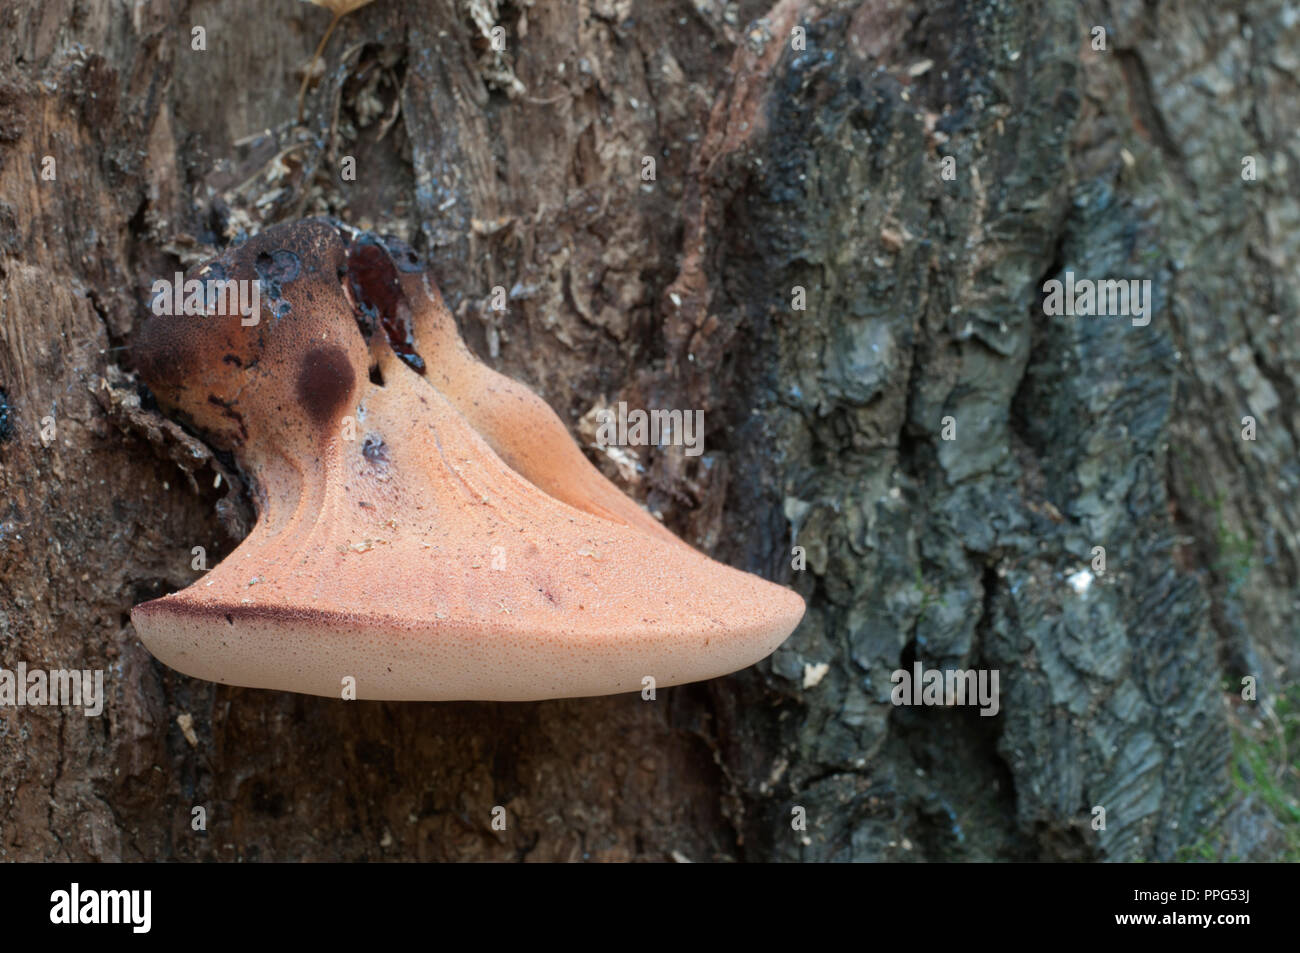 Pycnoporus cinnabarinus (cinabro polypore), Immagine ravvicinata Foto Stock